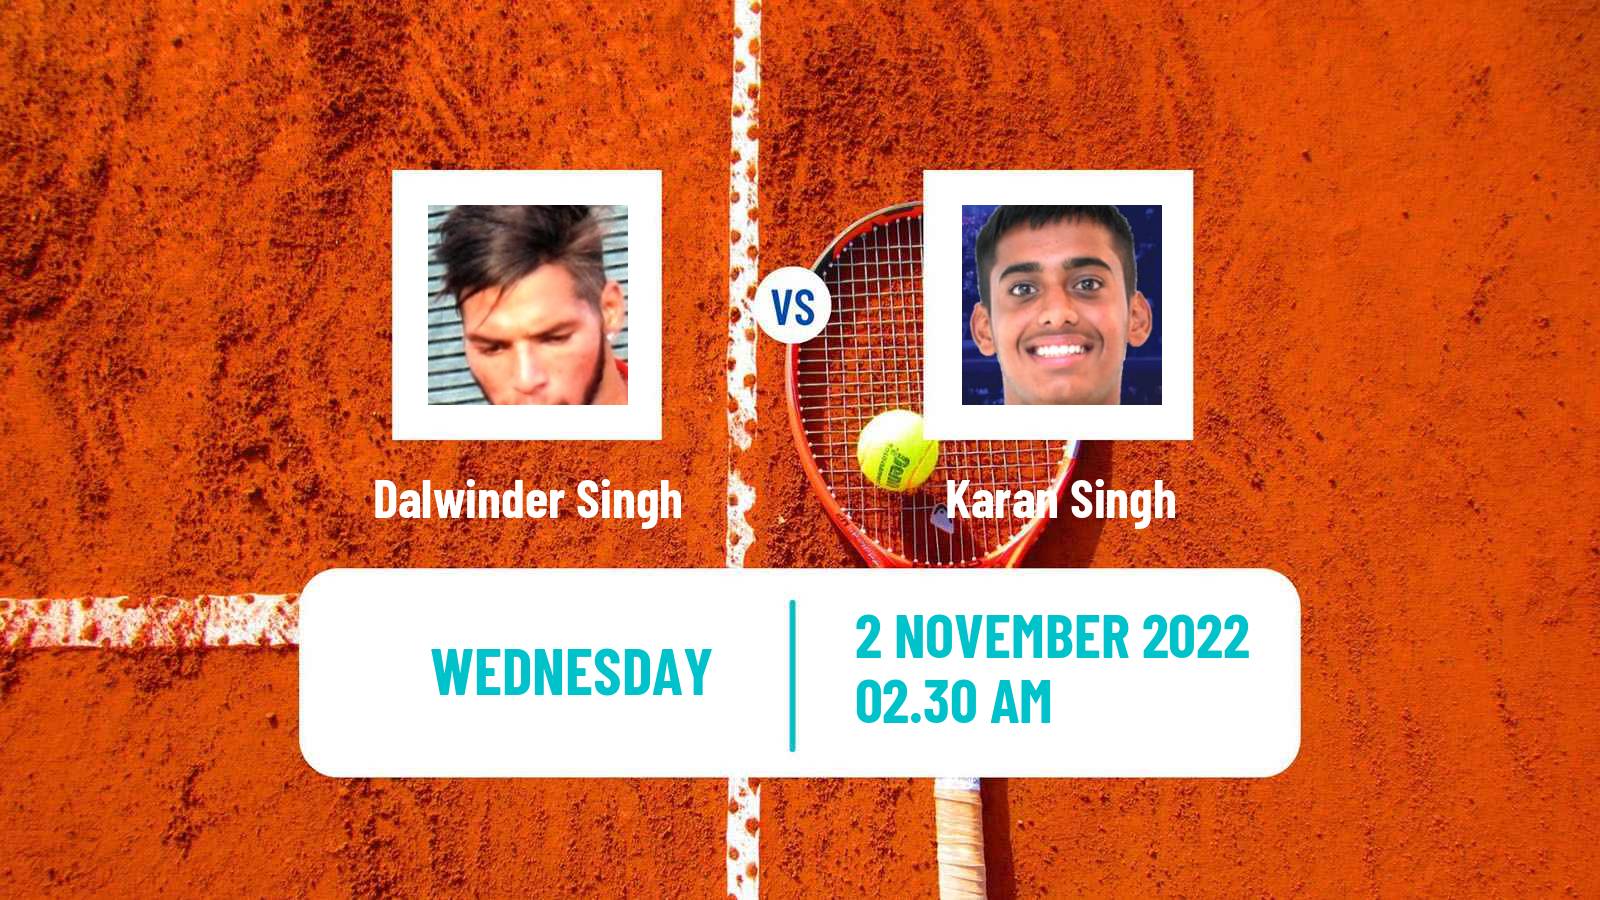 Tennis ITF Tournaments Dalwinder Singh - Karan Singh